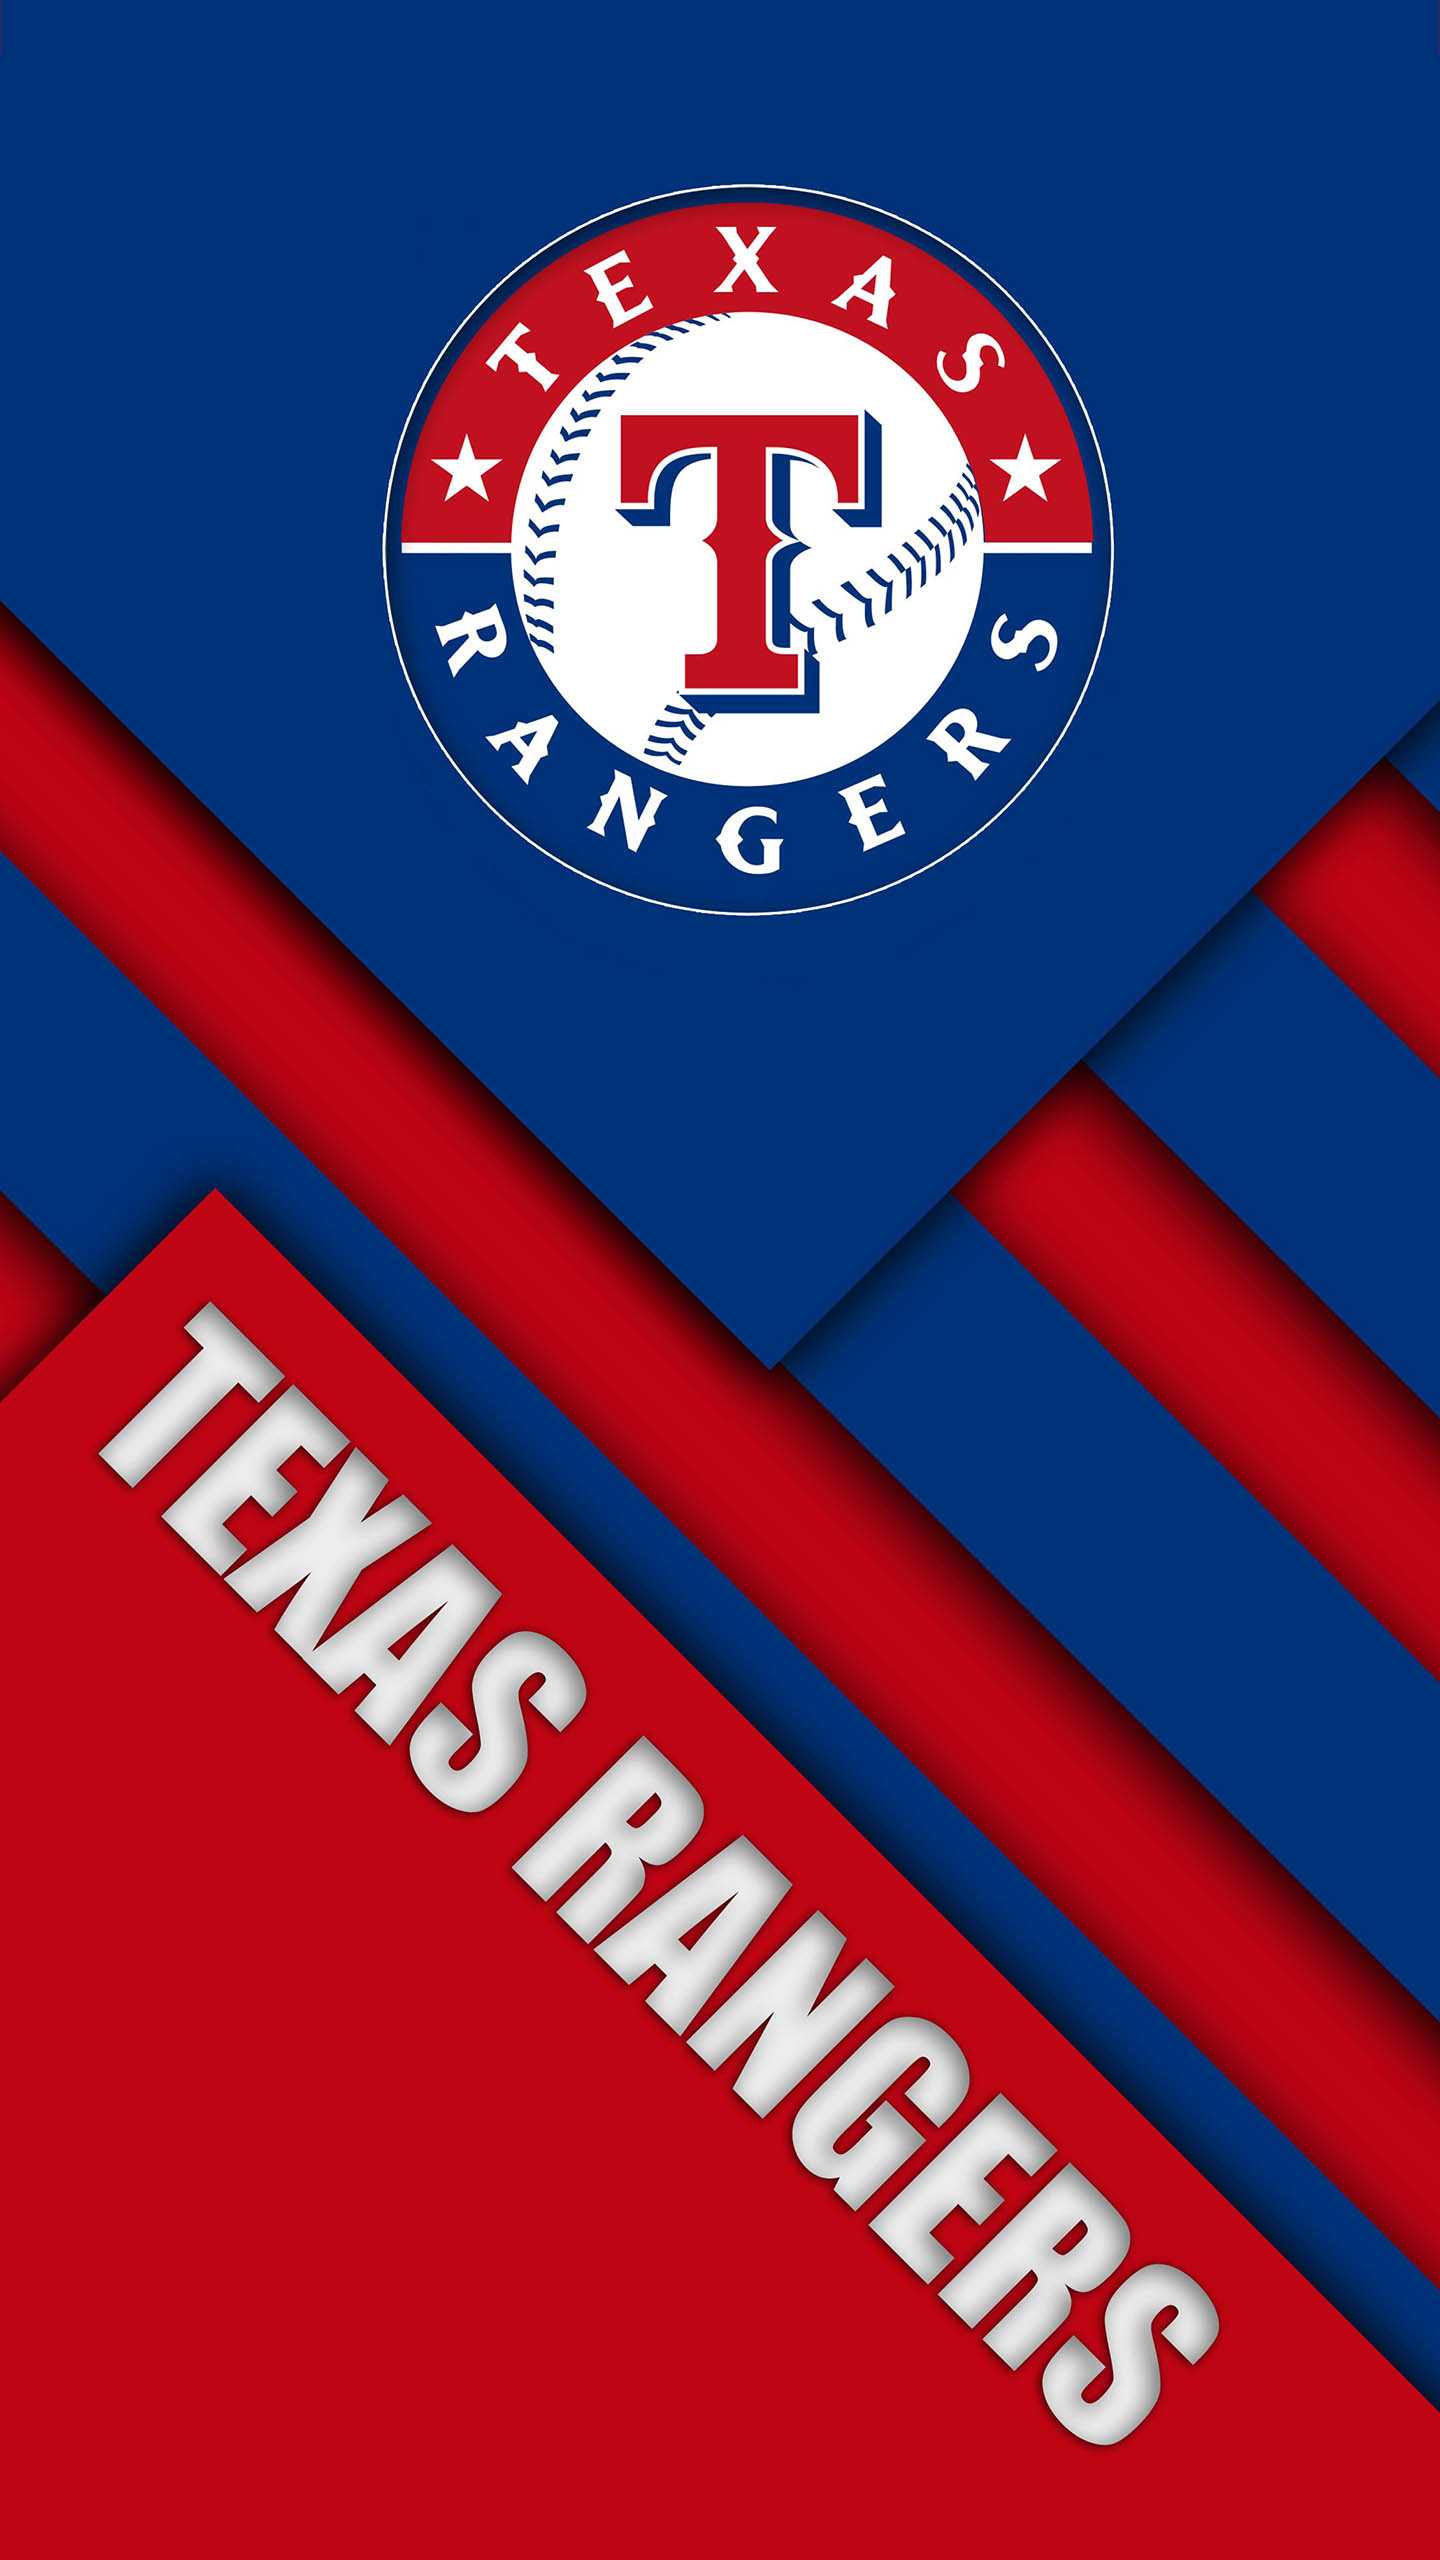 Texas Rangers Wallpaper - iXpap